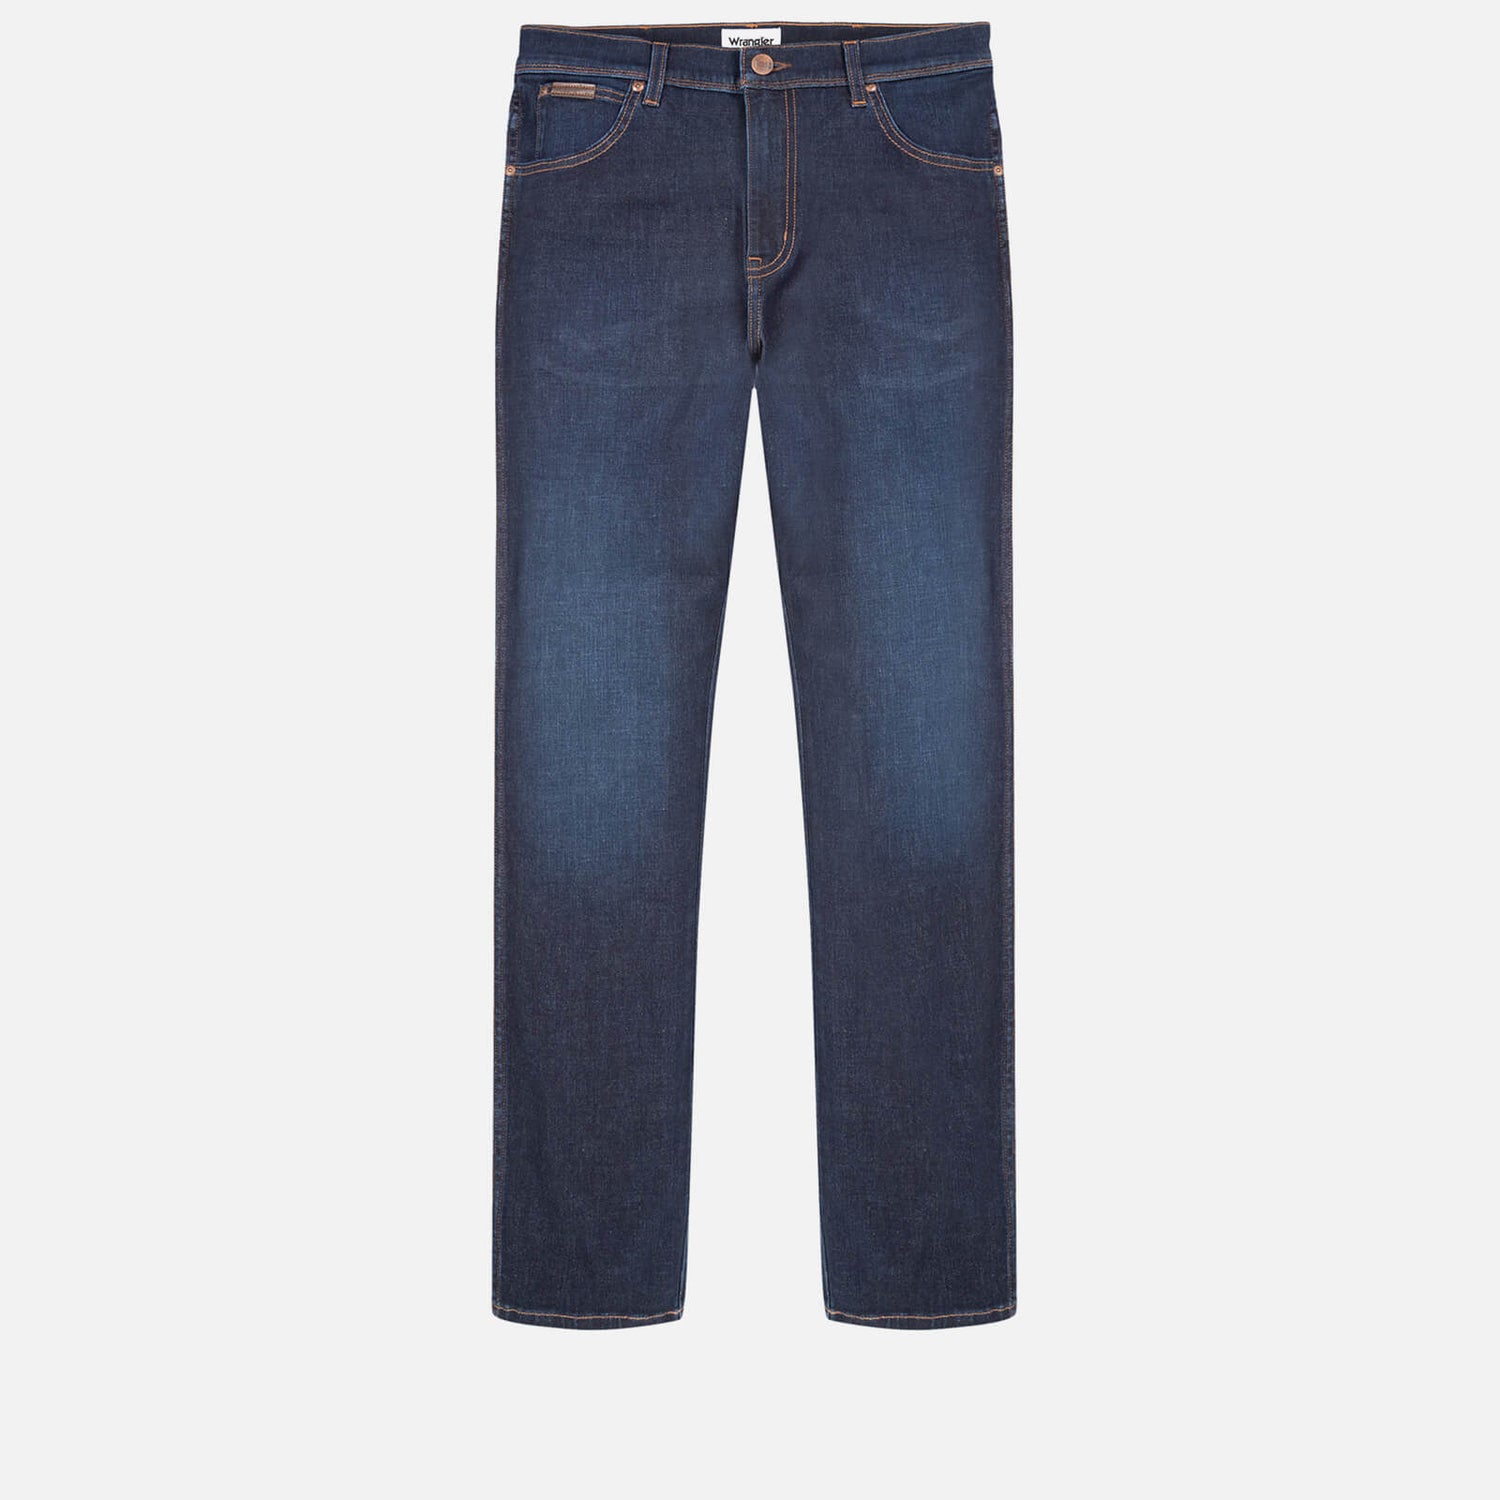 Wrangler Texas Slim Fit Cotton-Blend Jeans - W34/L30